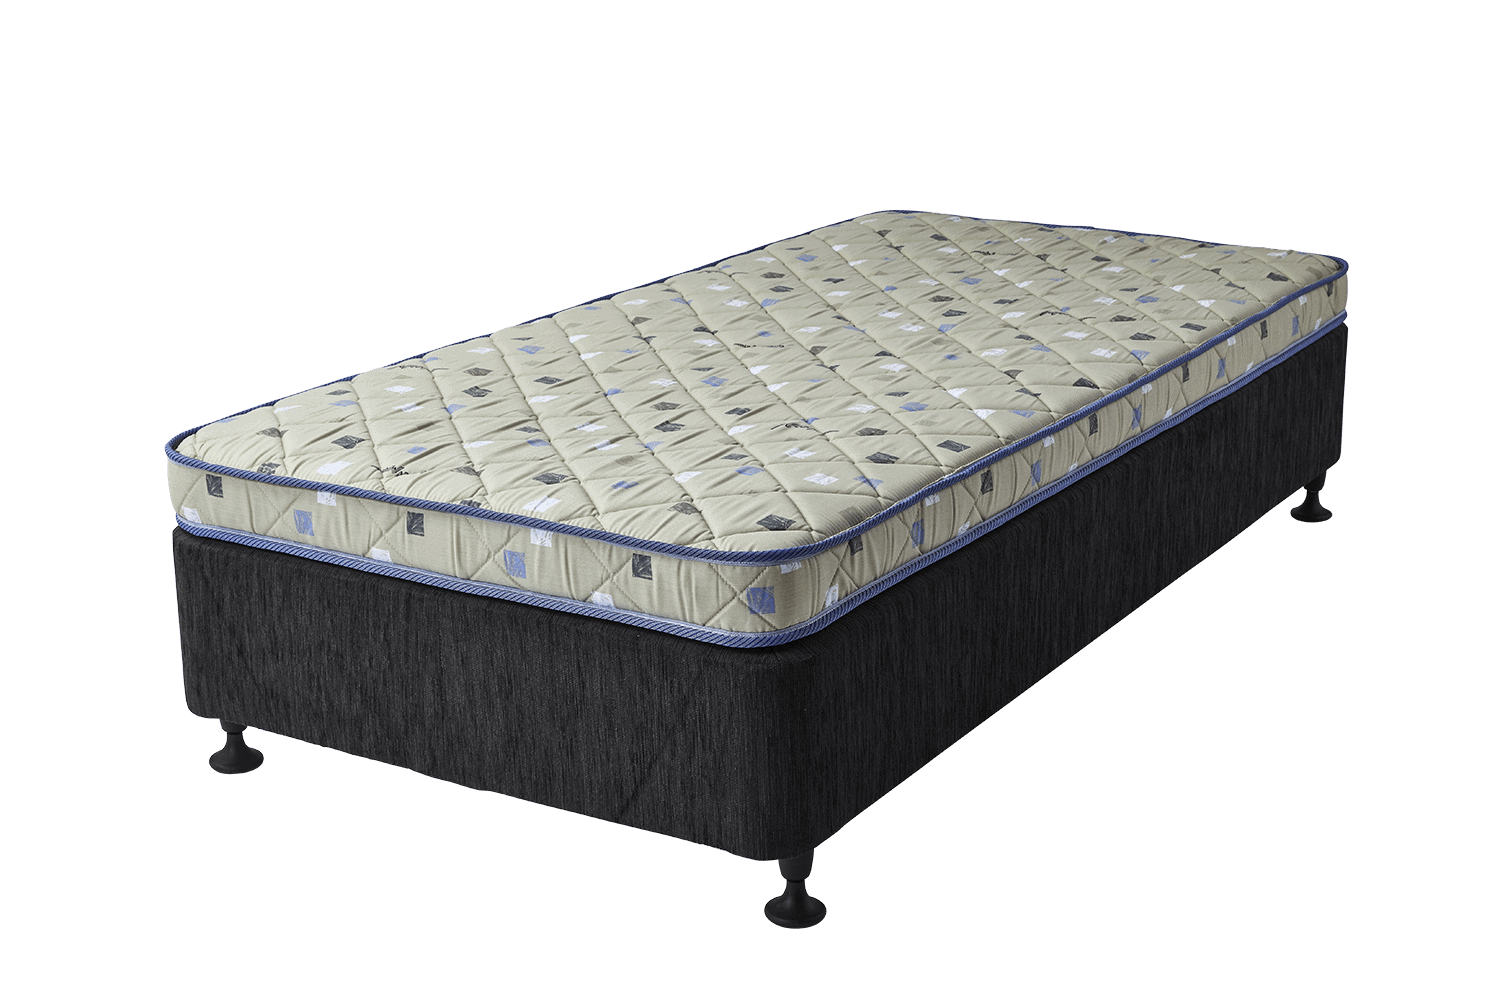 cot mattress price game